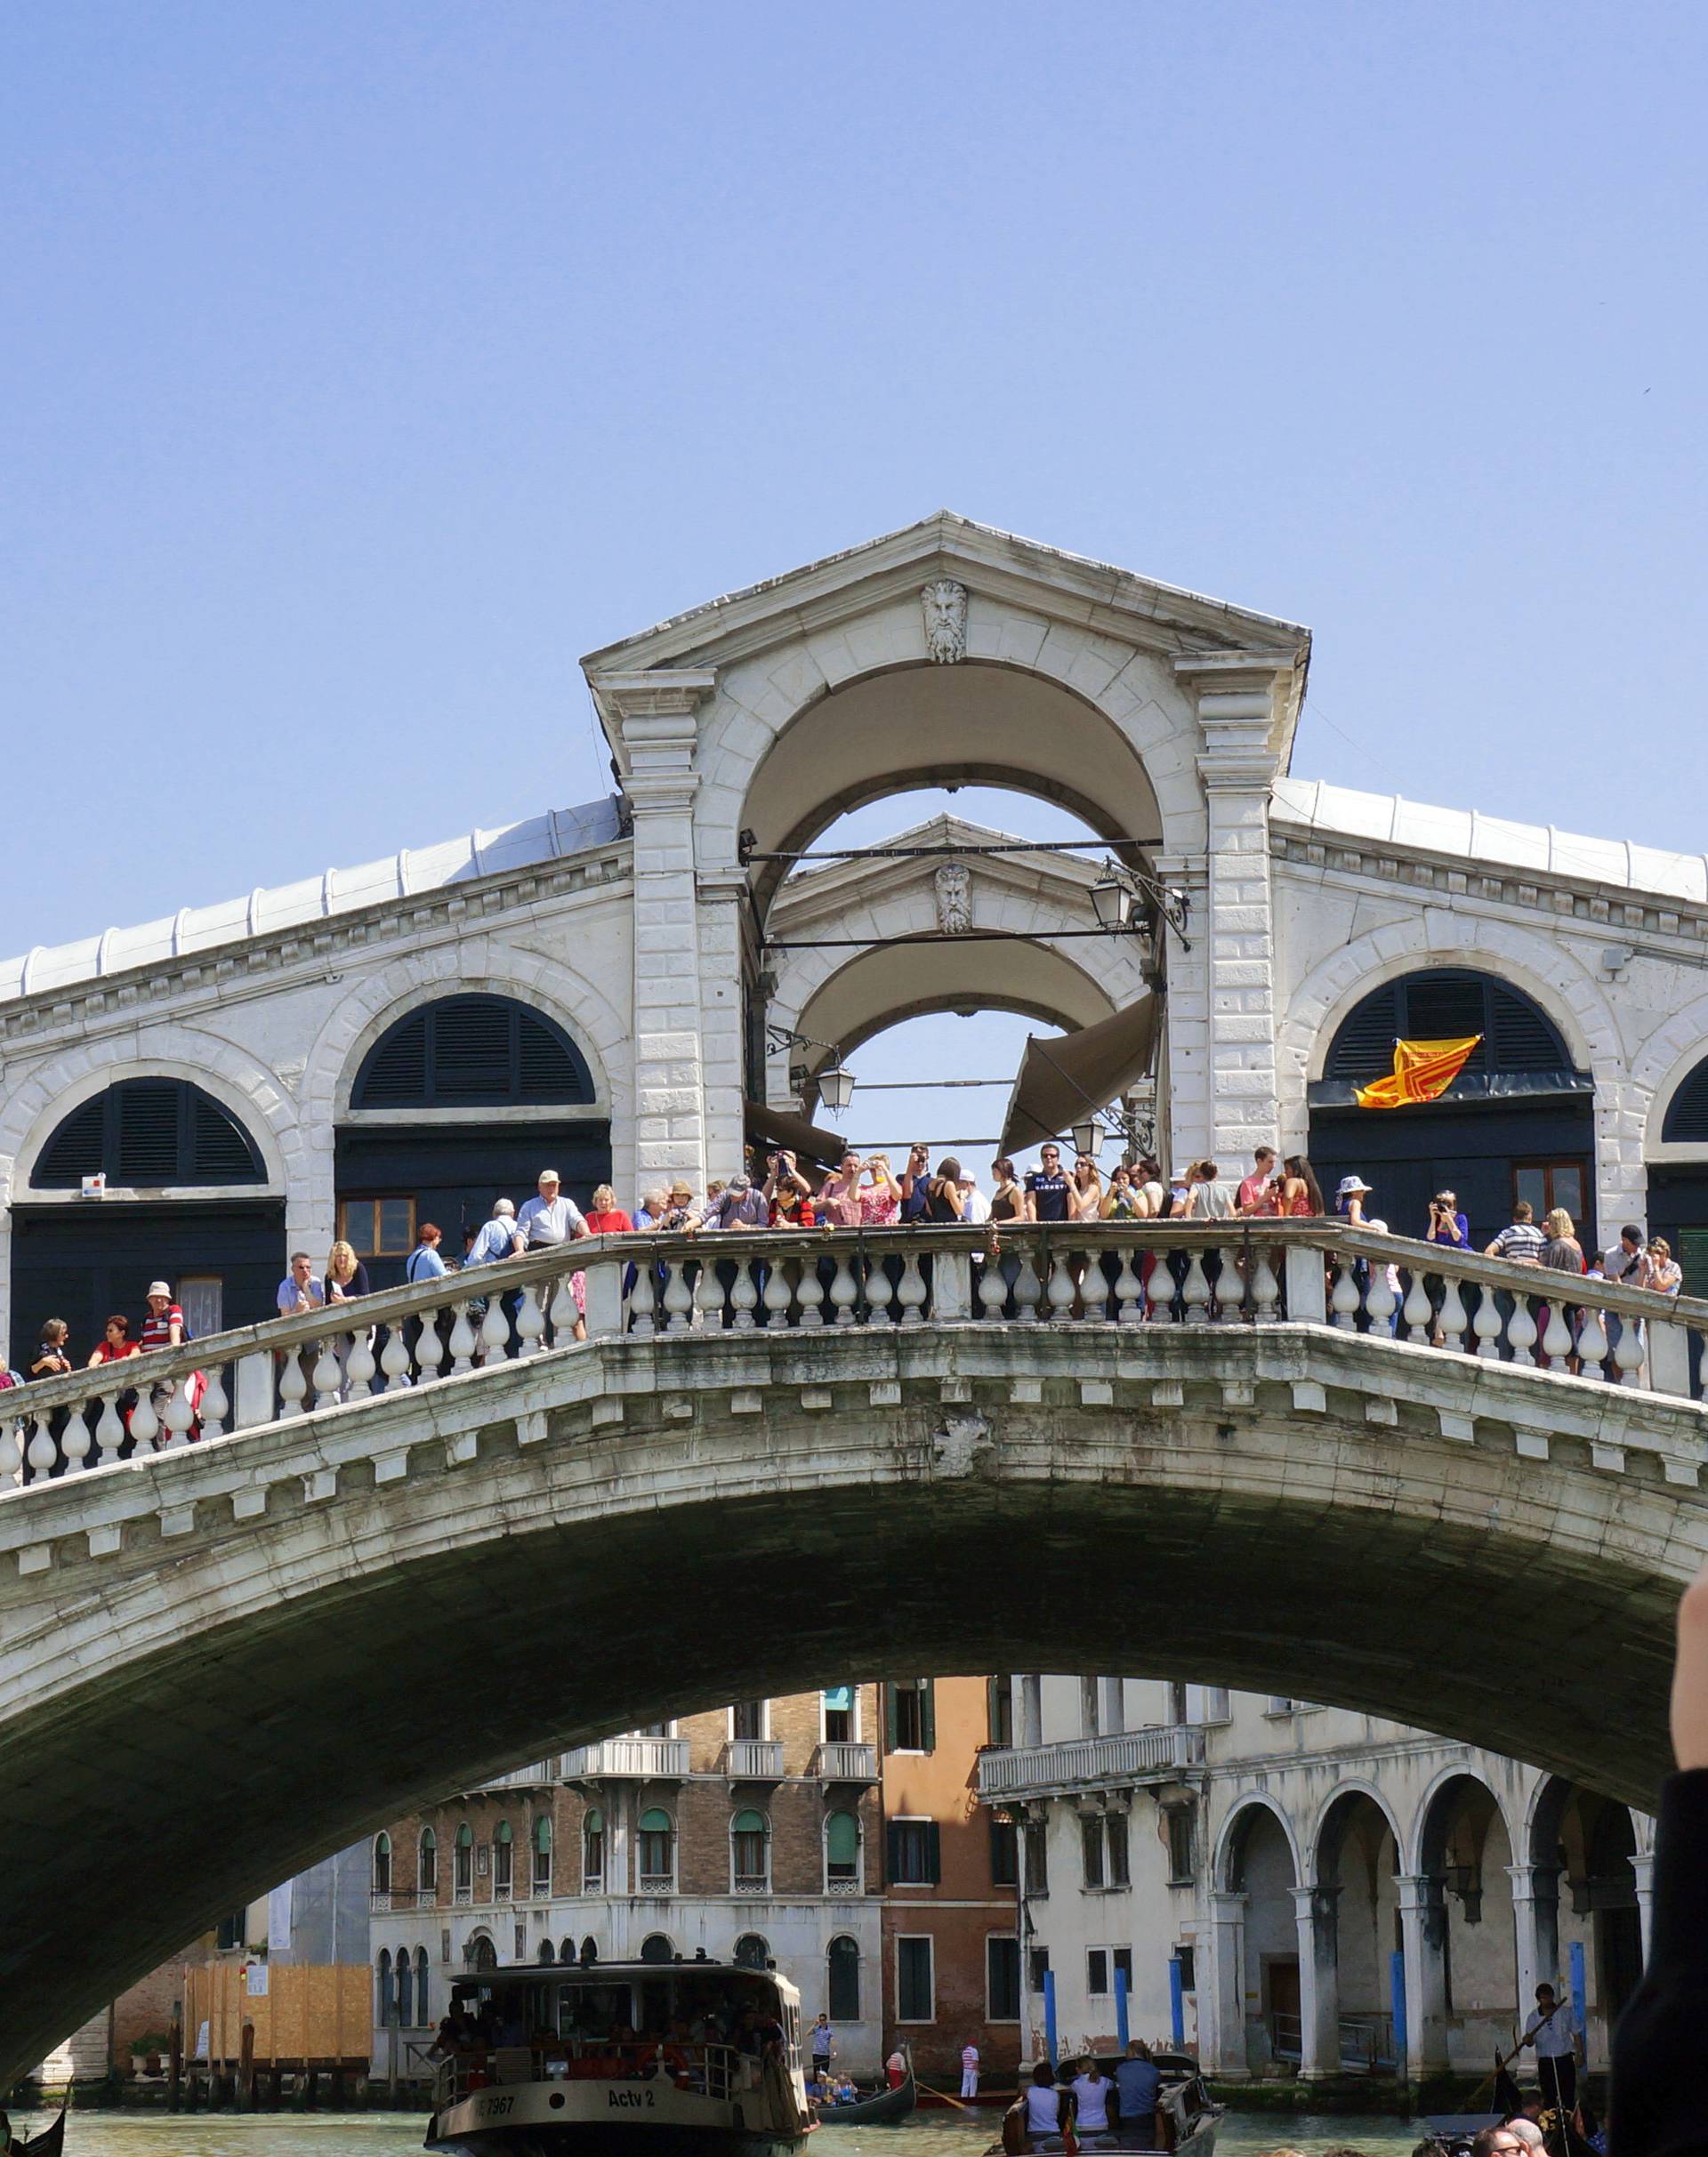 View of Venice - Rialto Bridge